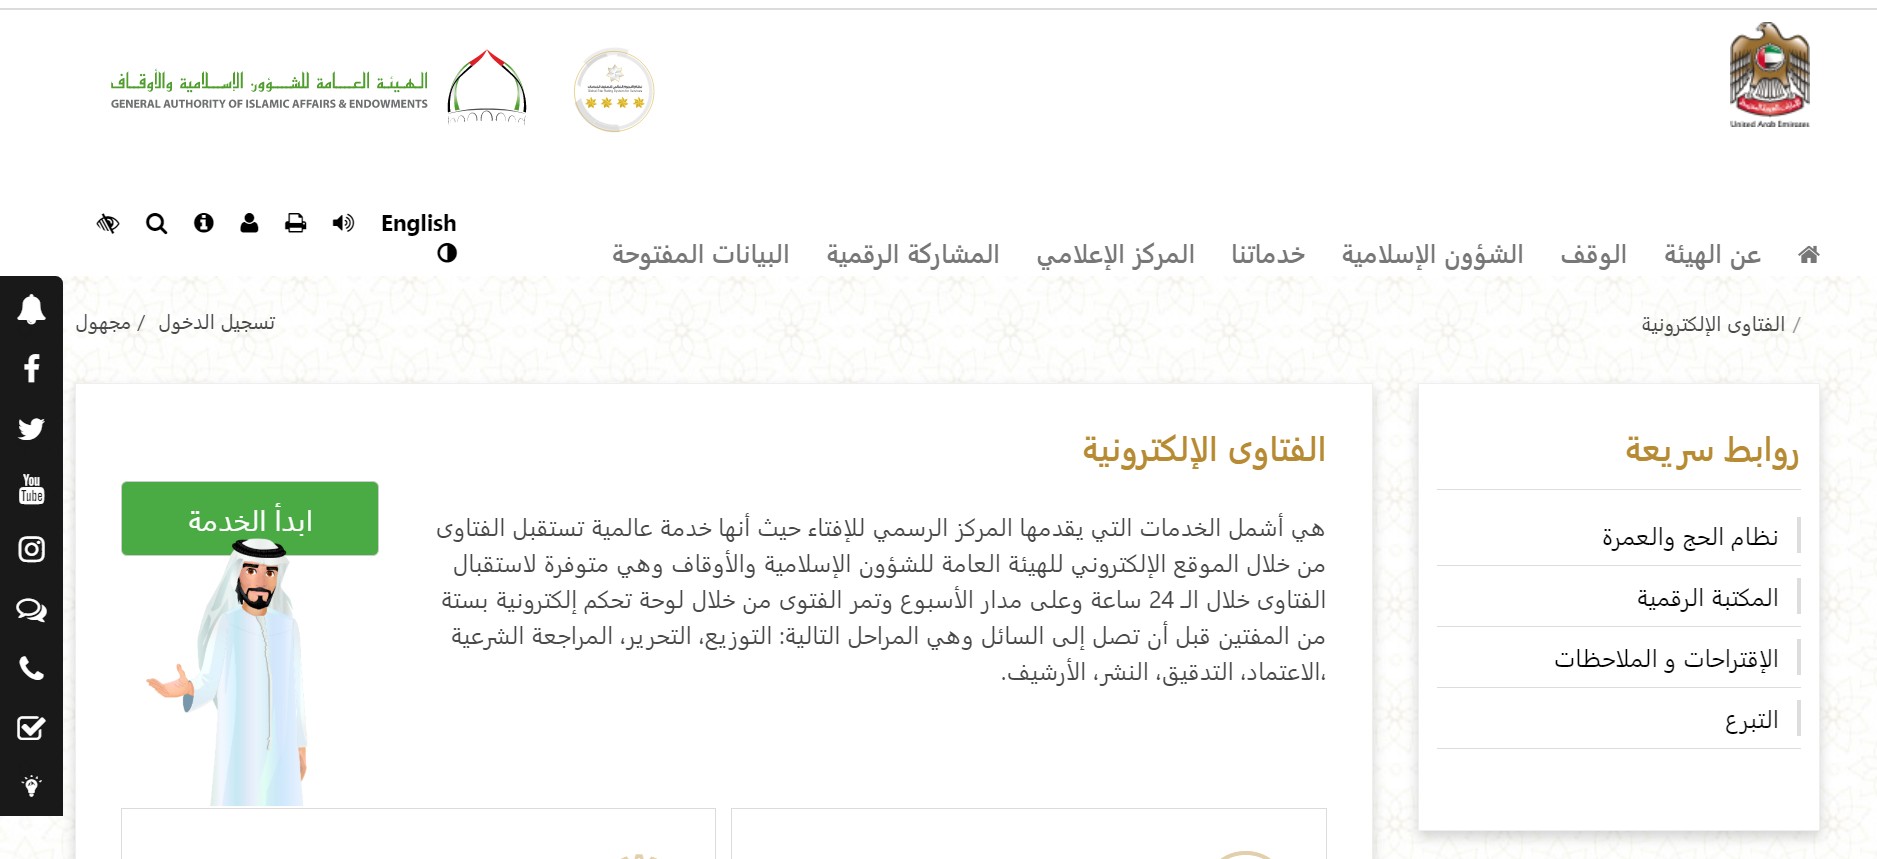 موقع الهيئة العامة للشؤون الإسلامية والأوقاف